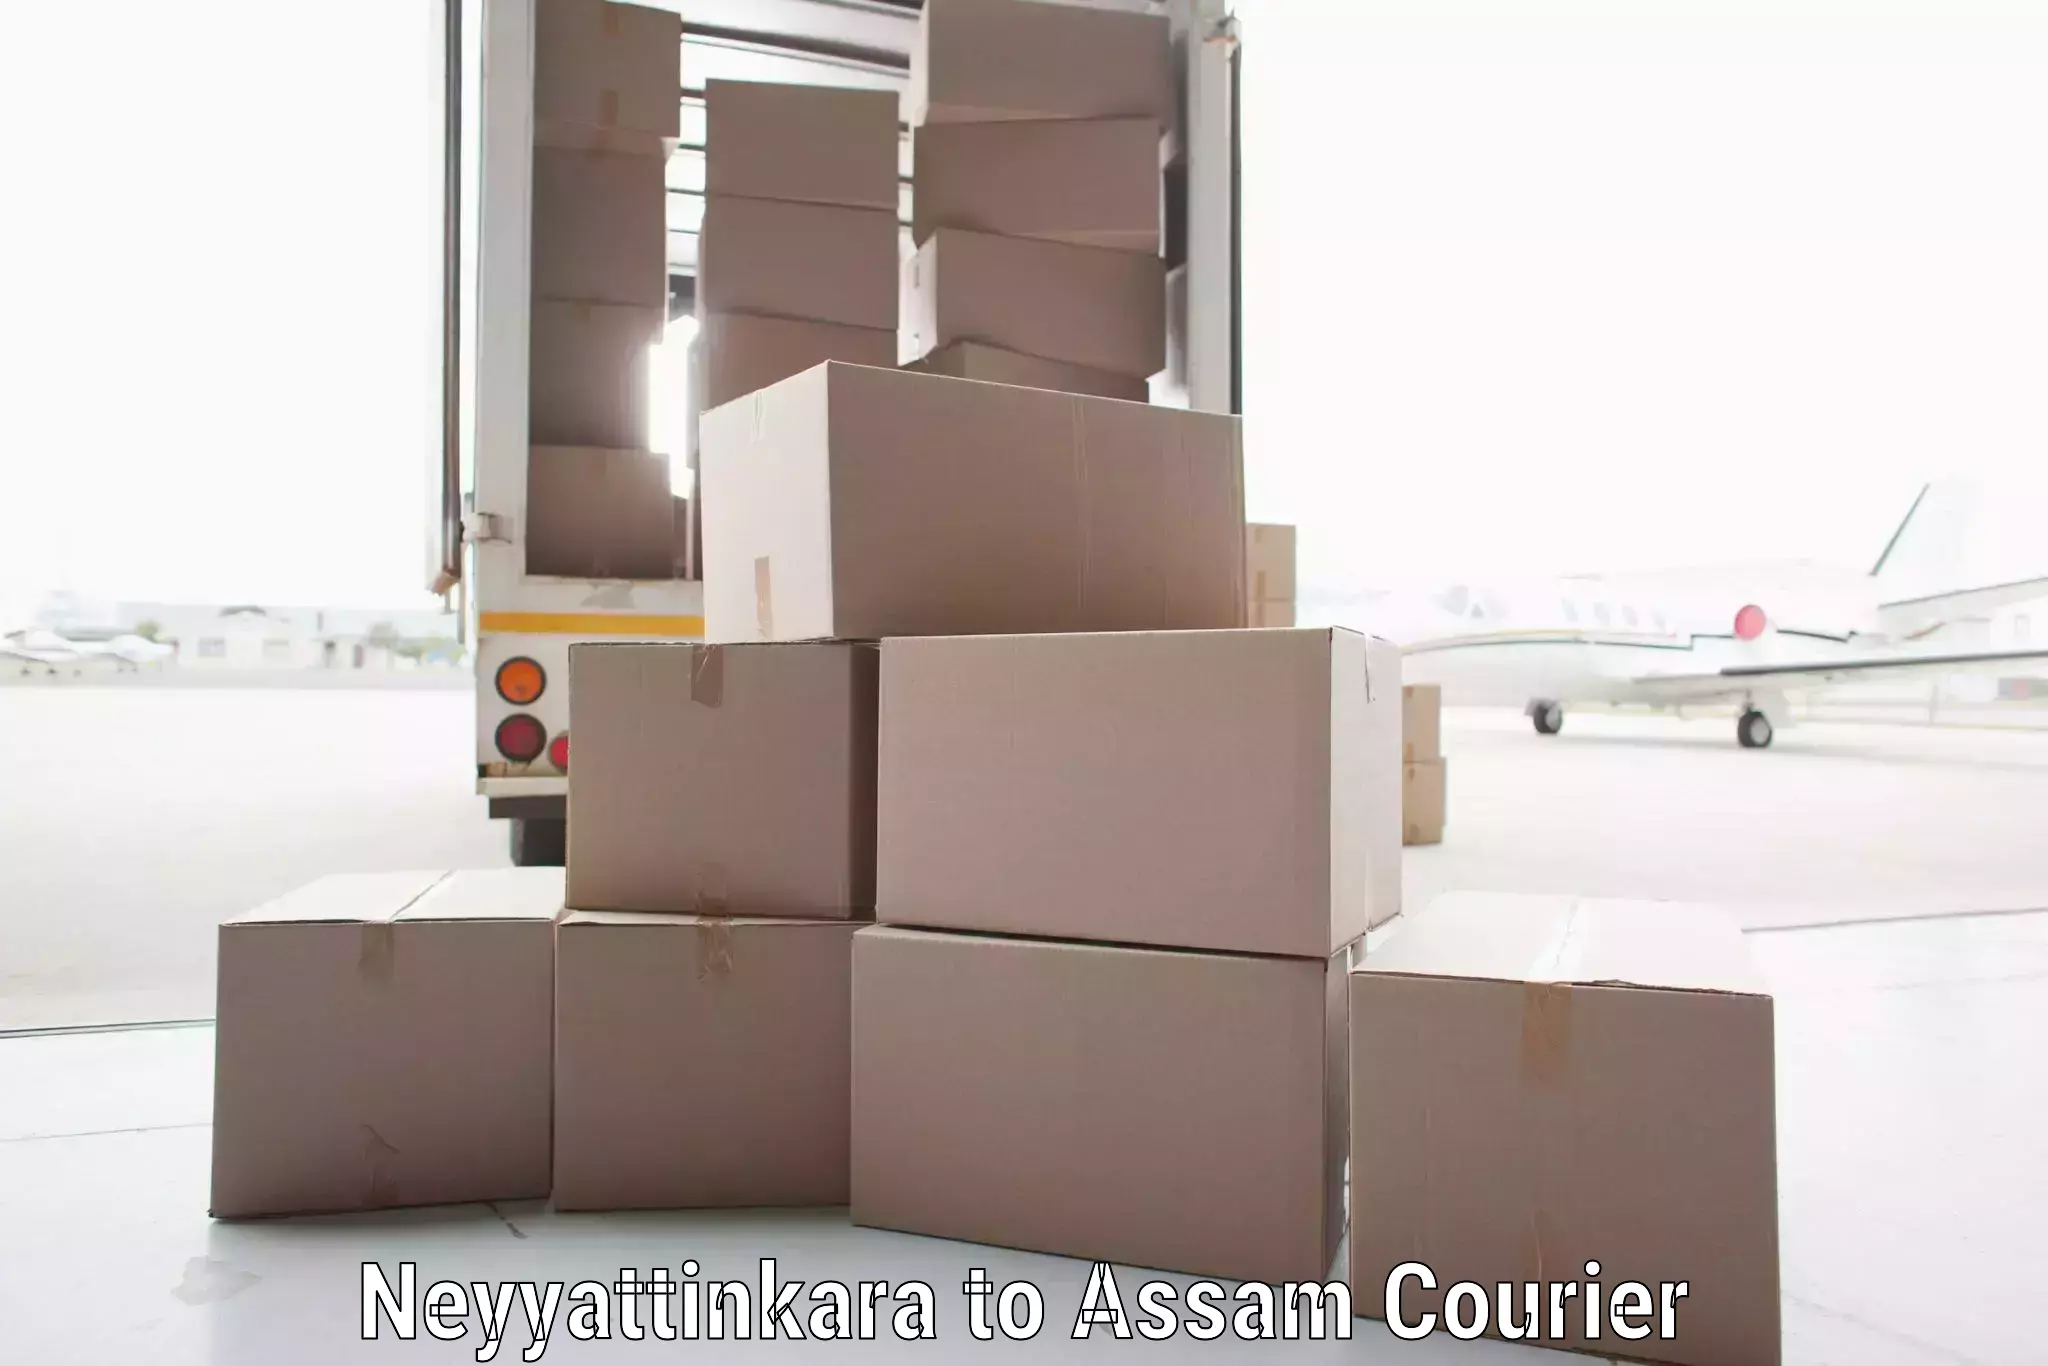 Customer-centric shipping Neyyattinkara to Assam